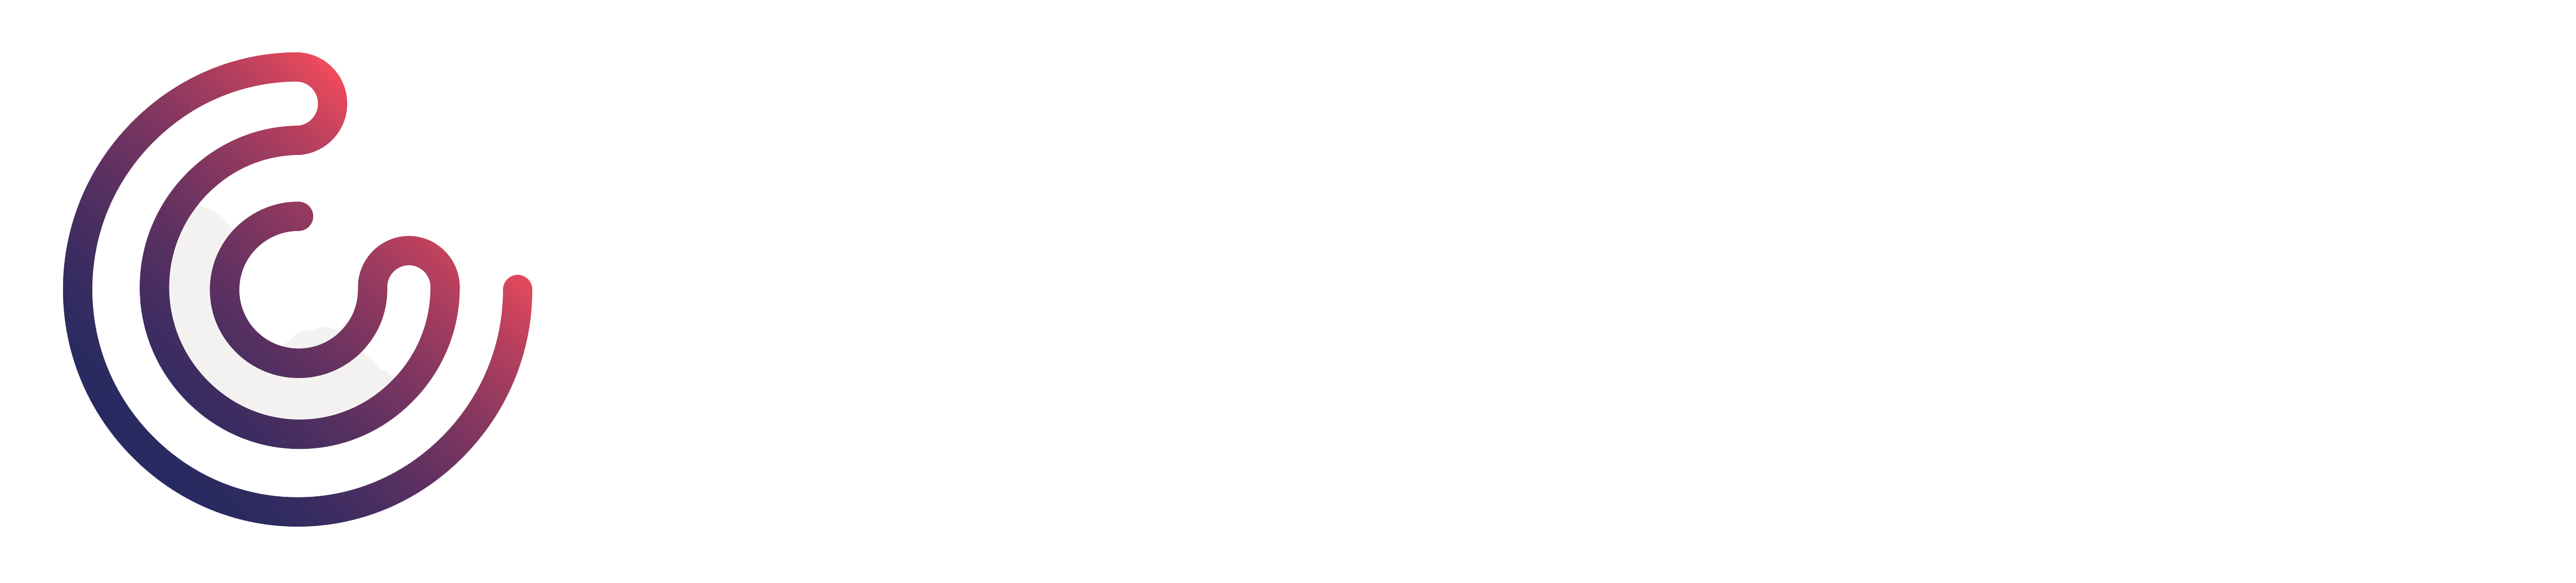 Clickworks